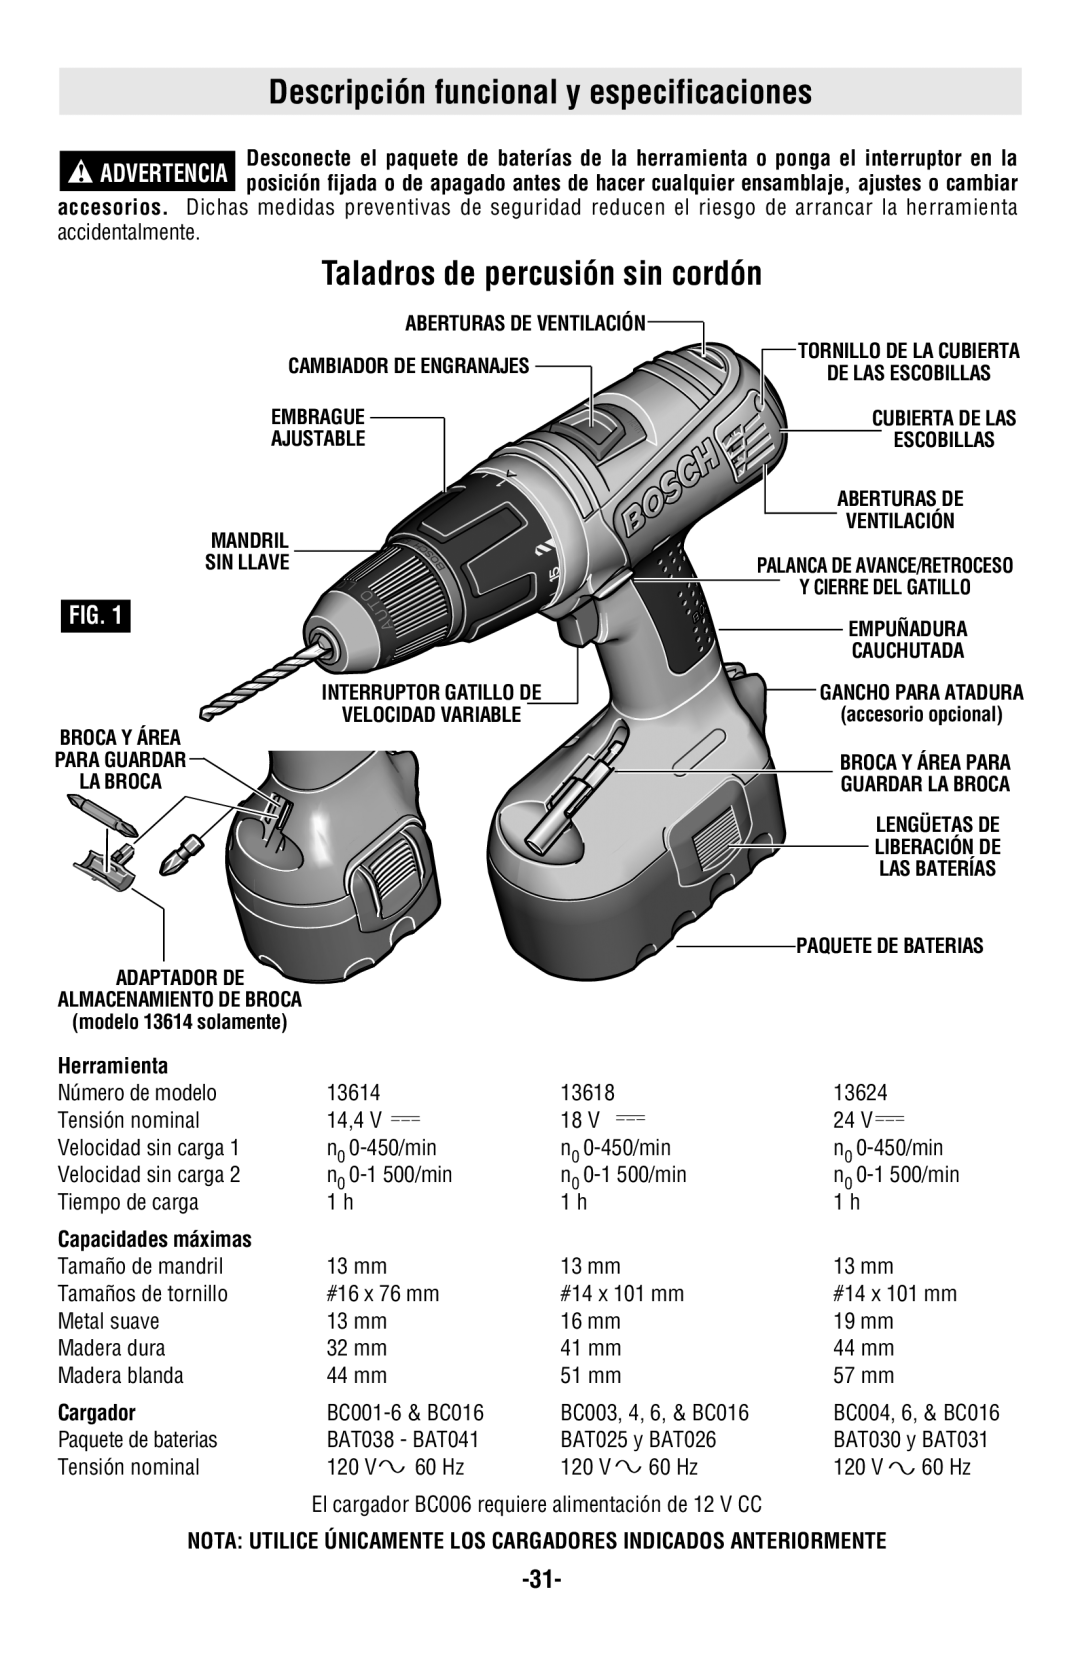 Bosch Power Tools 13618 Descripción funcional y especificaciones, Taladros de percusión sin cordón, Herramienta, Cargador 